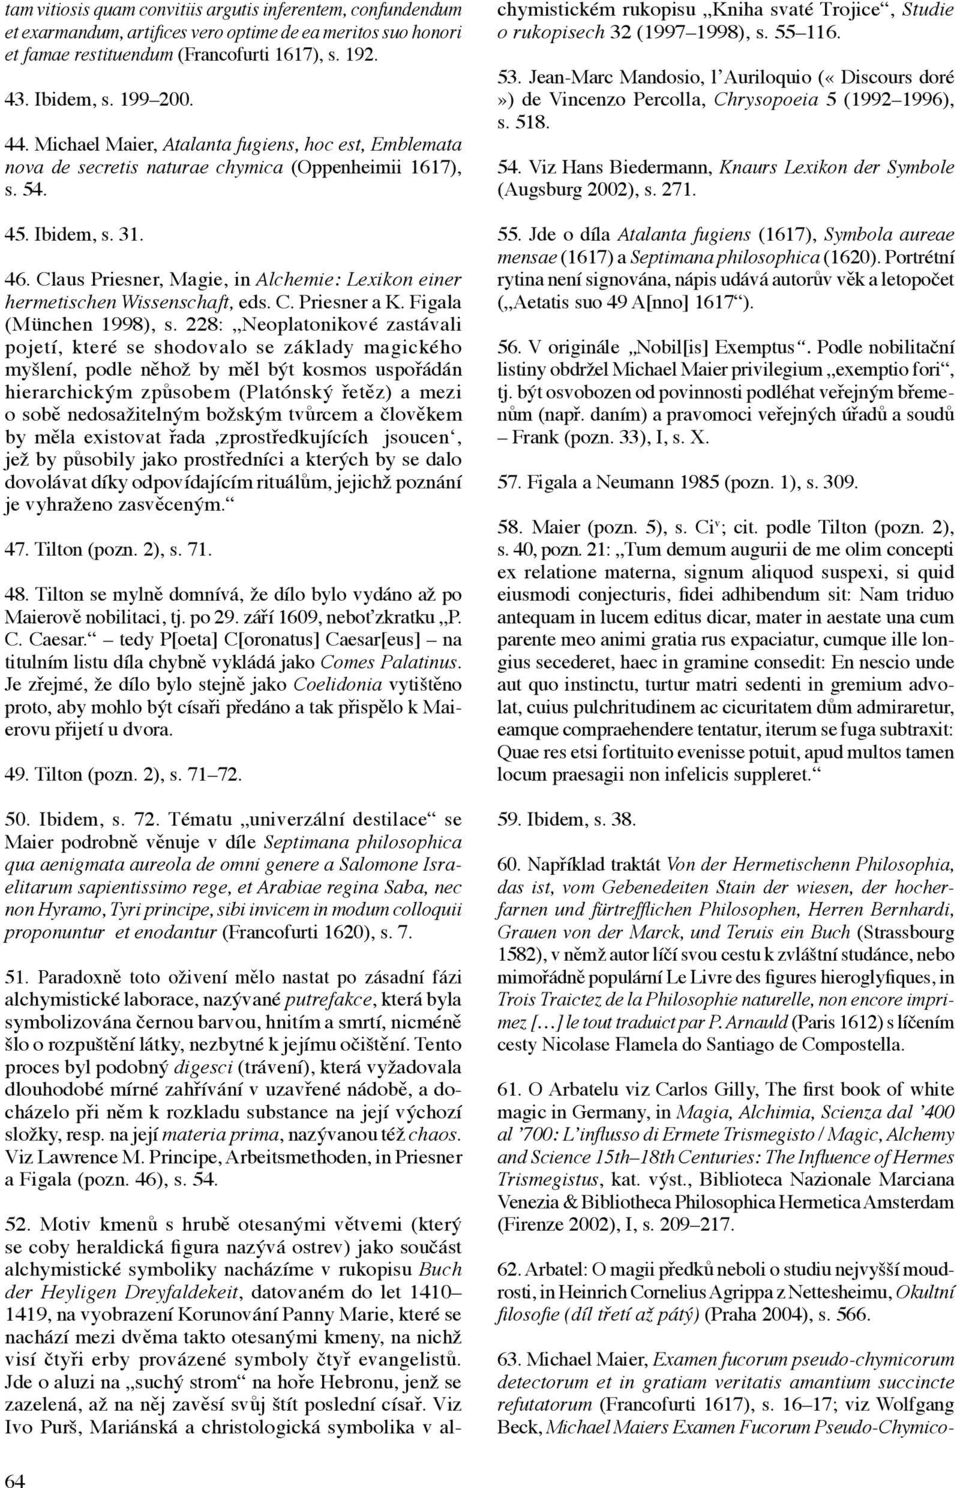 Claus Priesner, Magie, in Alchemie: Lexikon einer hermetischen Wissenschaft, eds. C. Priesner a K. Figala (München 1998), s.